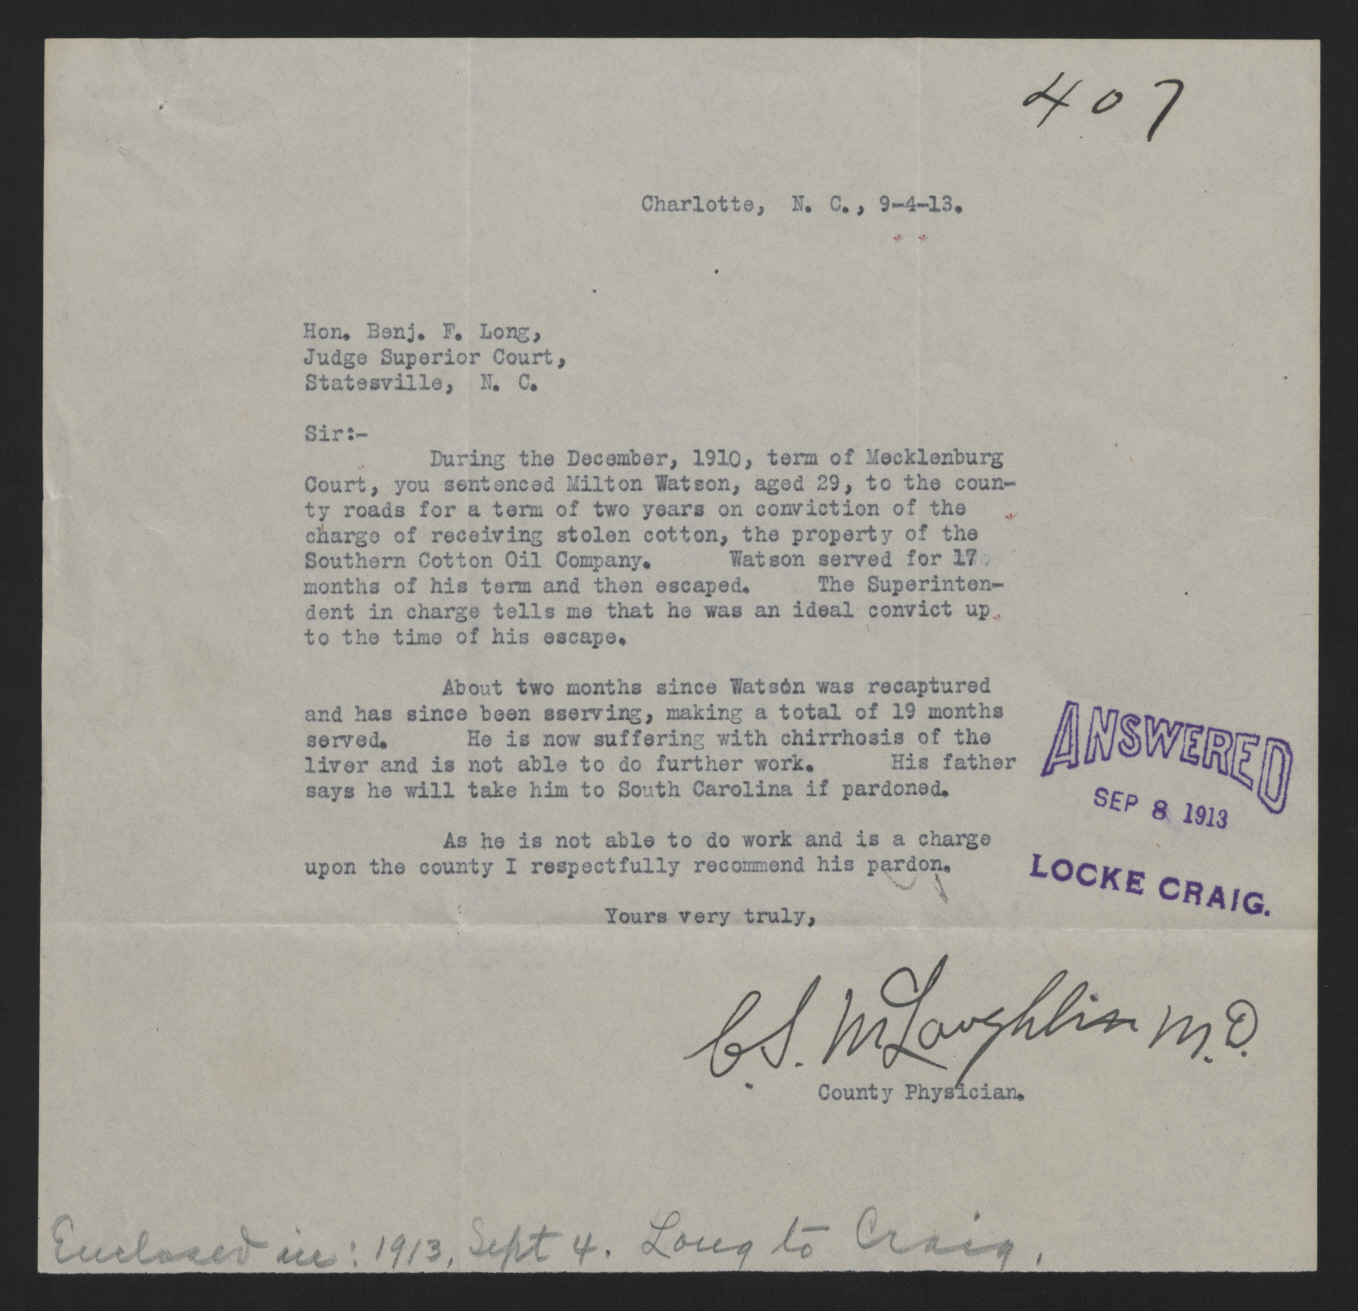 Letter from McLaughlin to Long, September 4, 1913